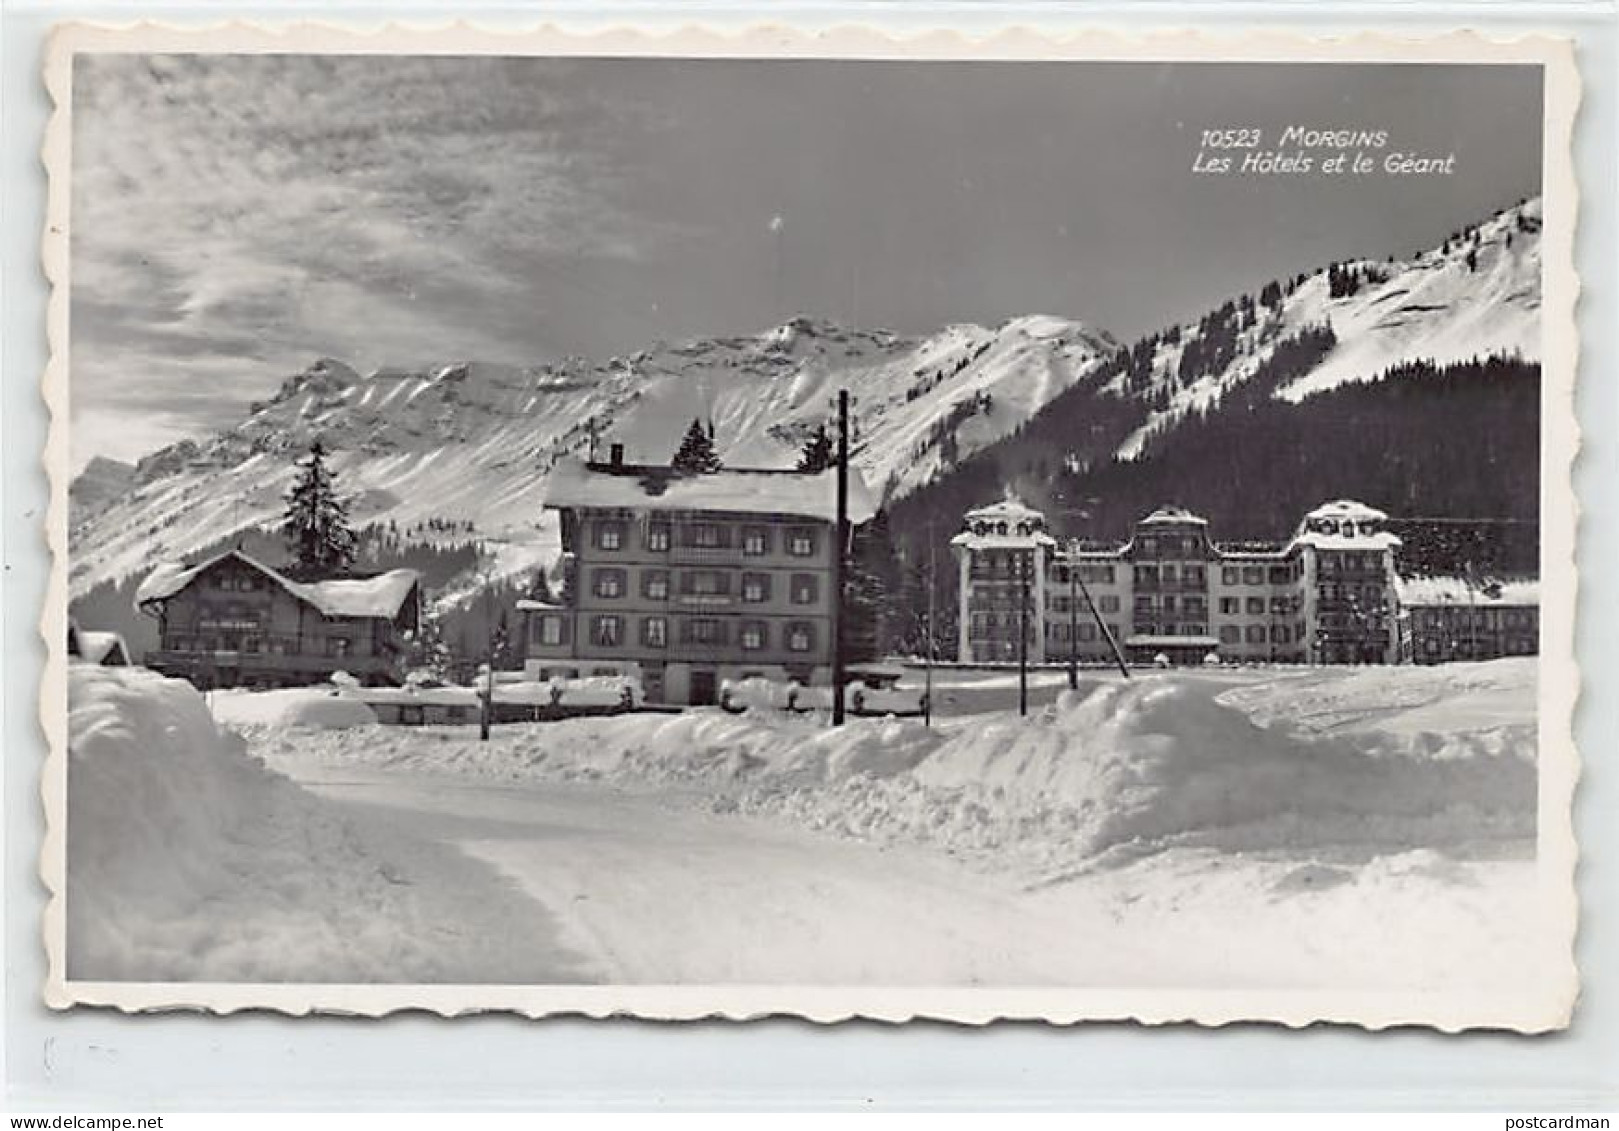 Suisse - MONTANA (VS) Les Hôtels Et Le Géant - Ed. Perrochet 10523 - Crans-Montana